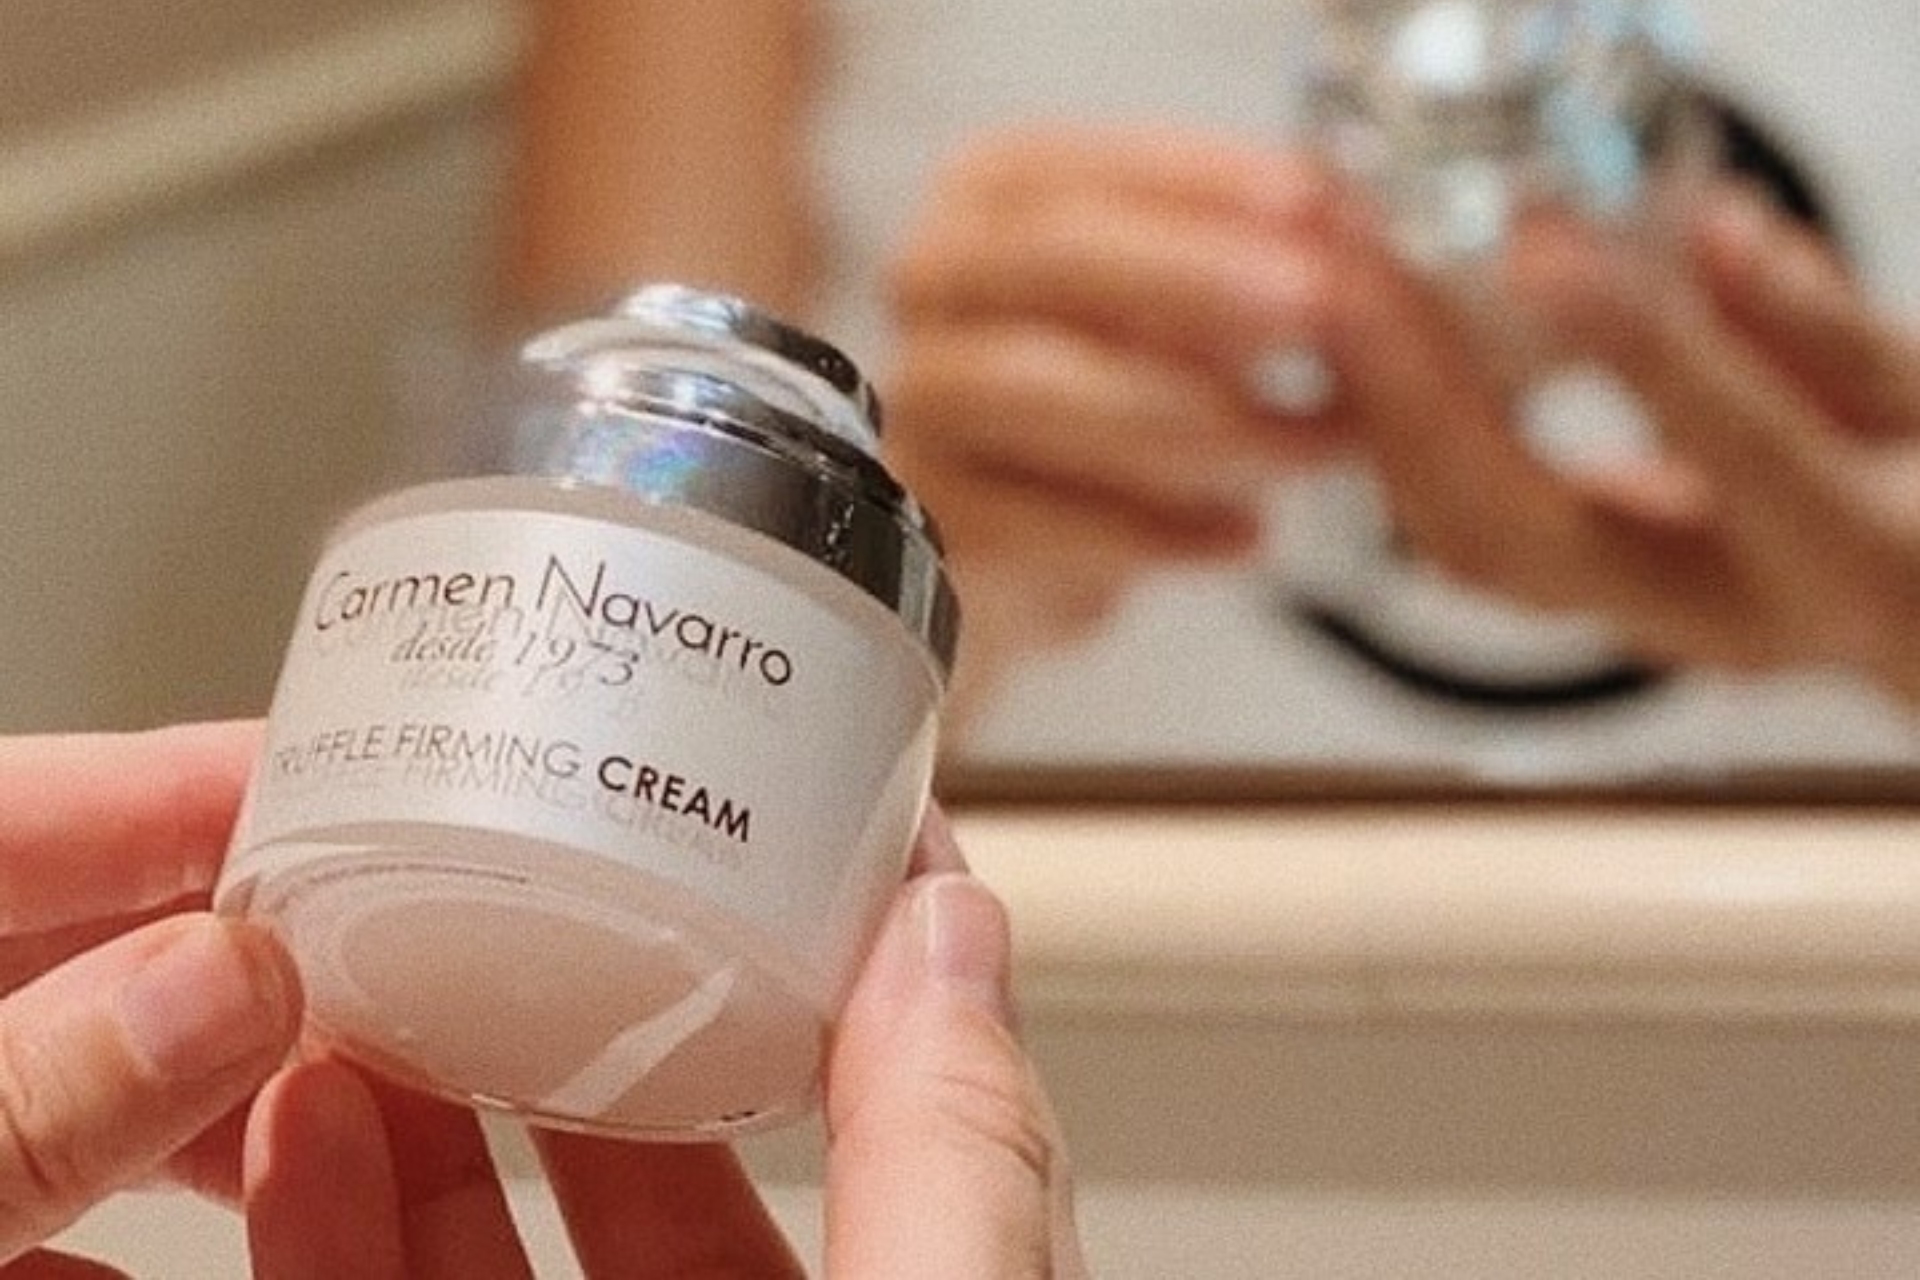 El superactivo de la cosmética de Carmen Navarro: Trufa blanca del Piamonte